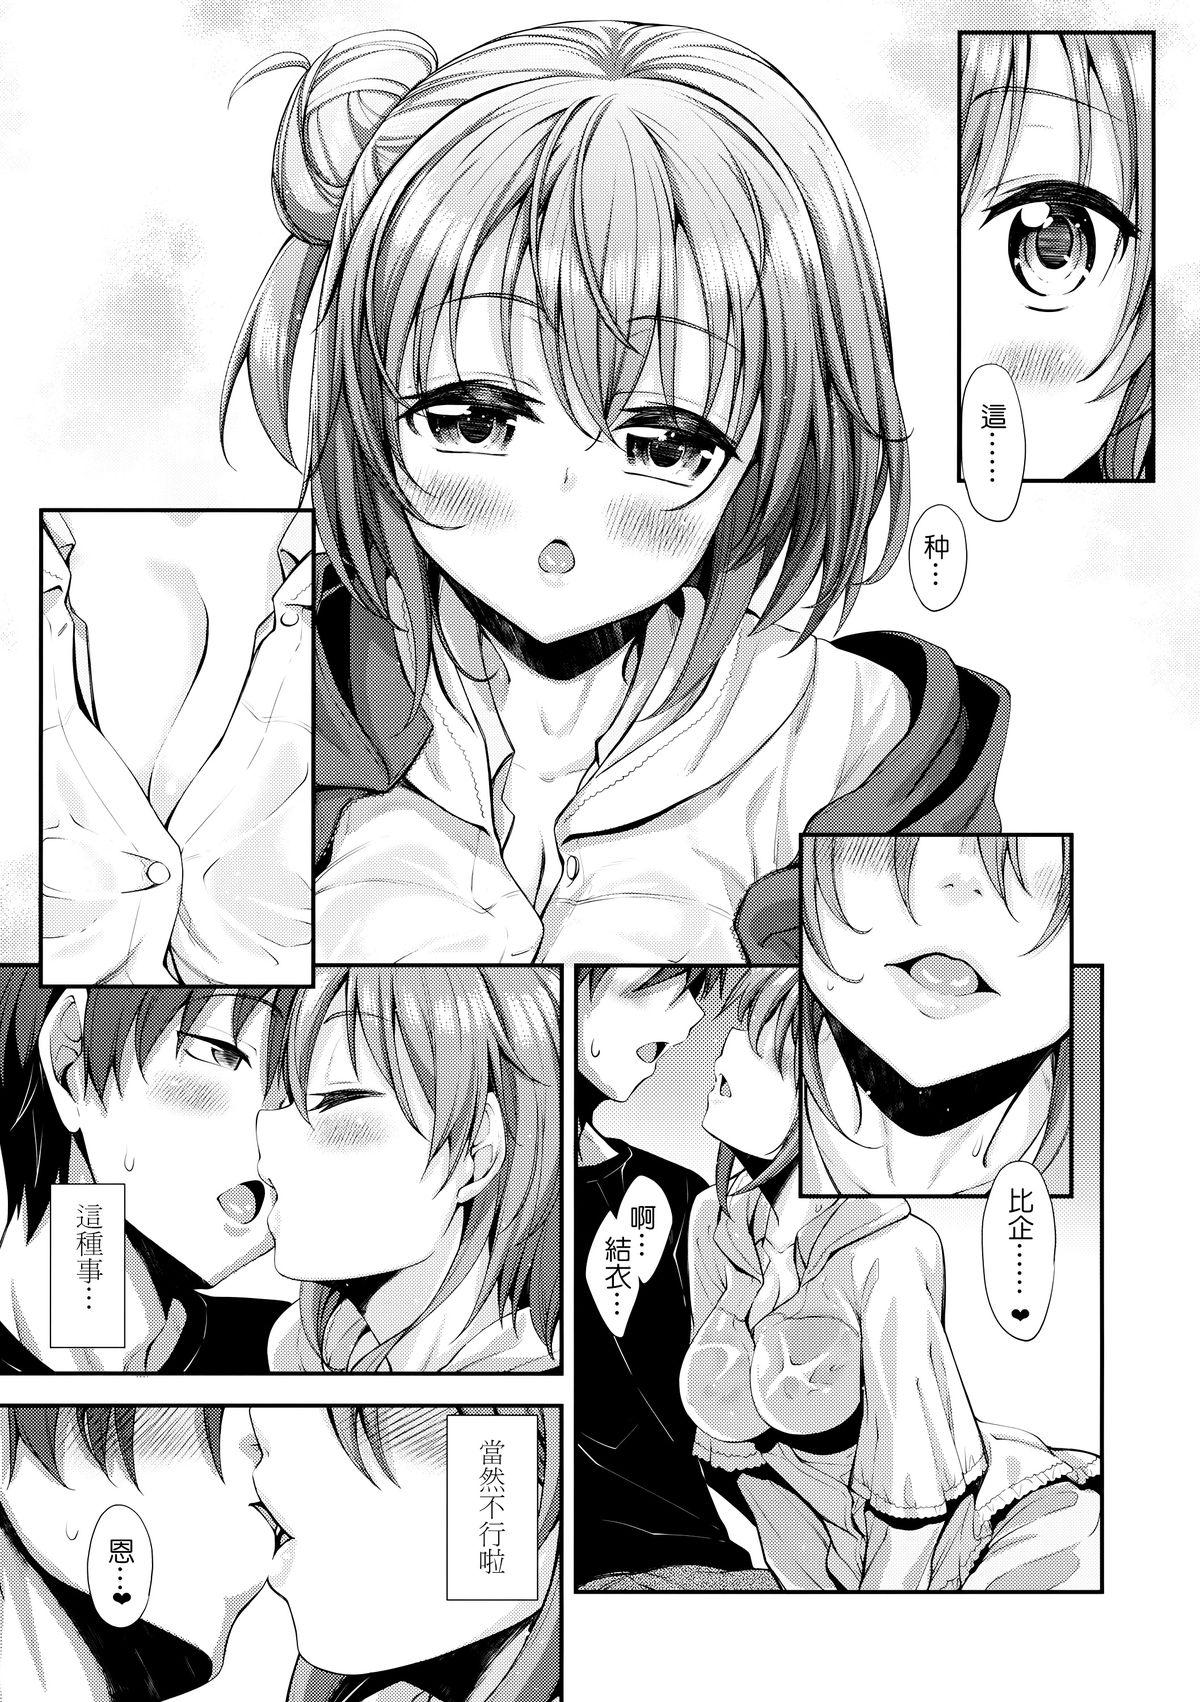 Sexo LOVE STORY #01 - Yahari ore no seishun love come wa machigatteiru Passionate - Page 11